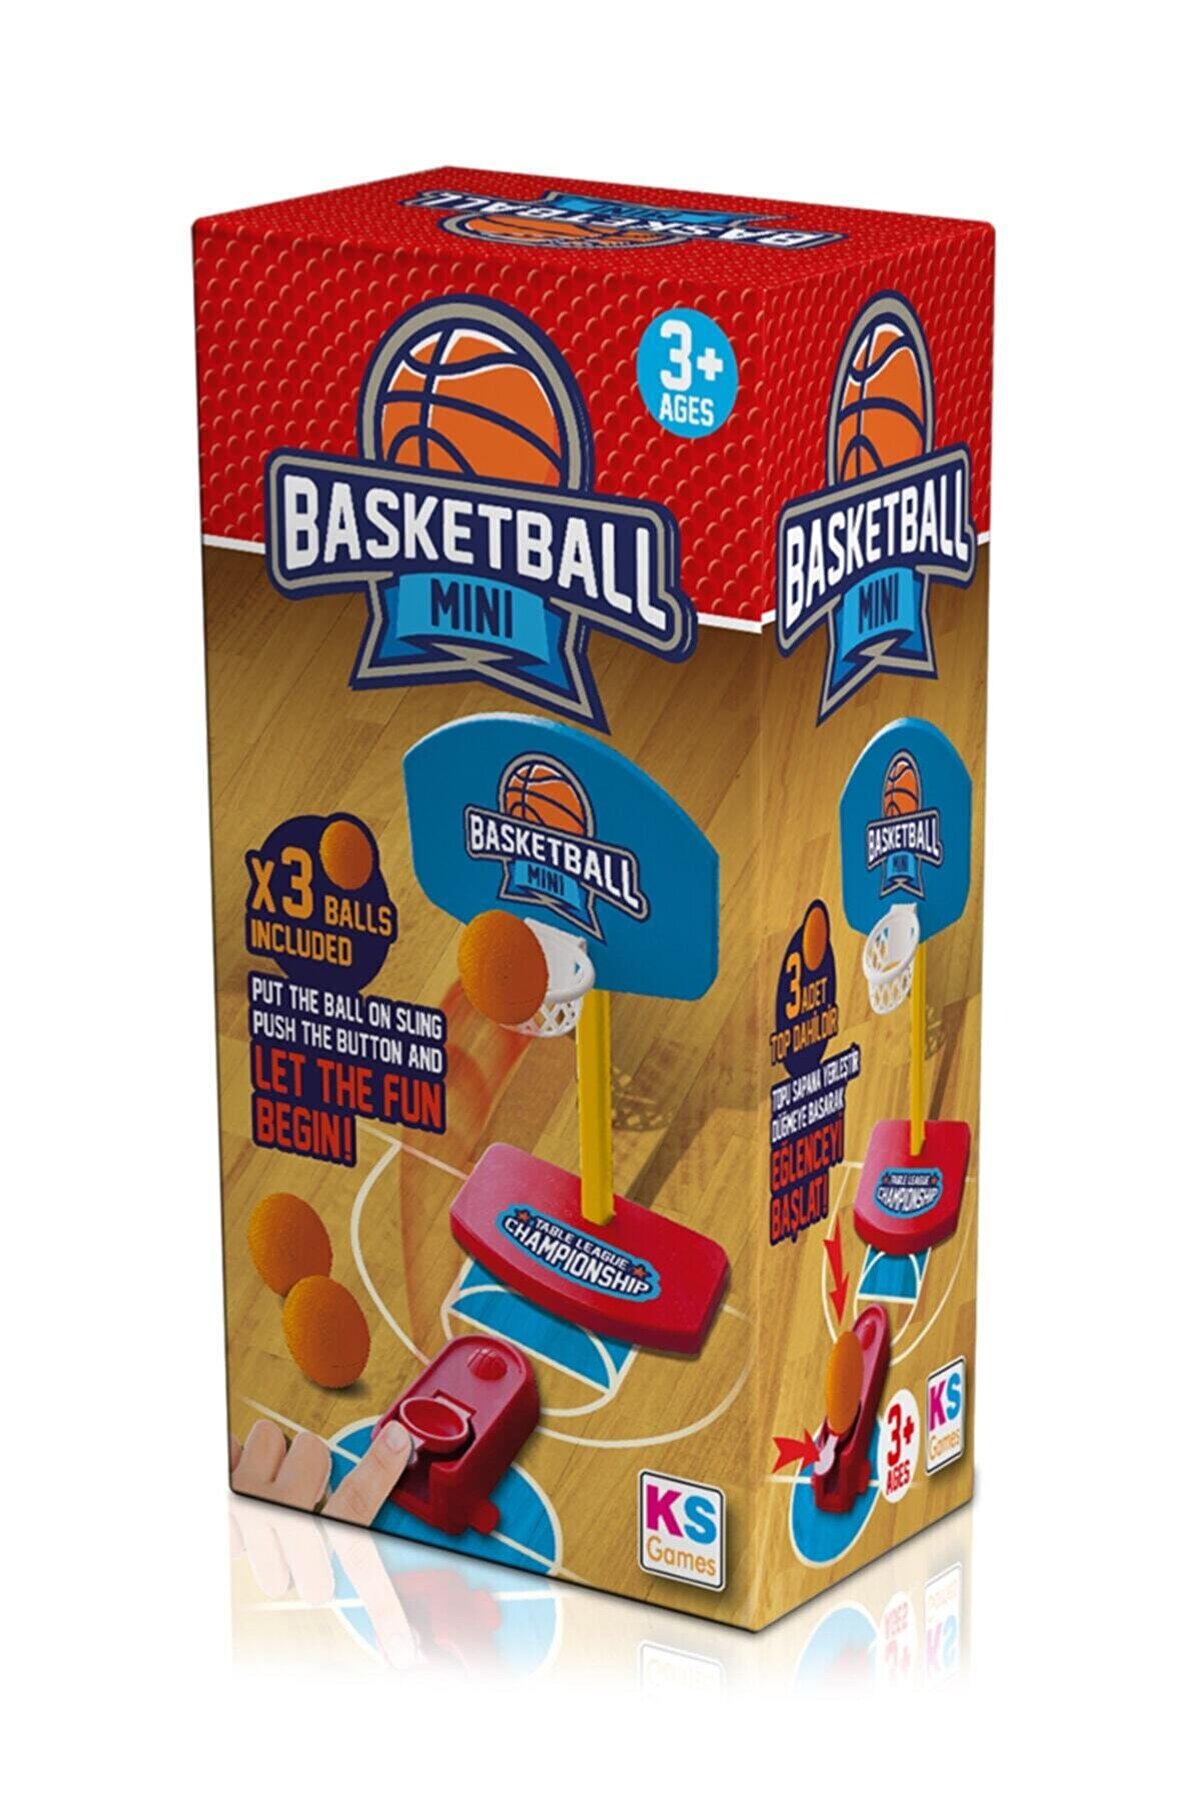 Ks Games Mini Basketbol Oyunu Aile Oyunları